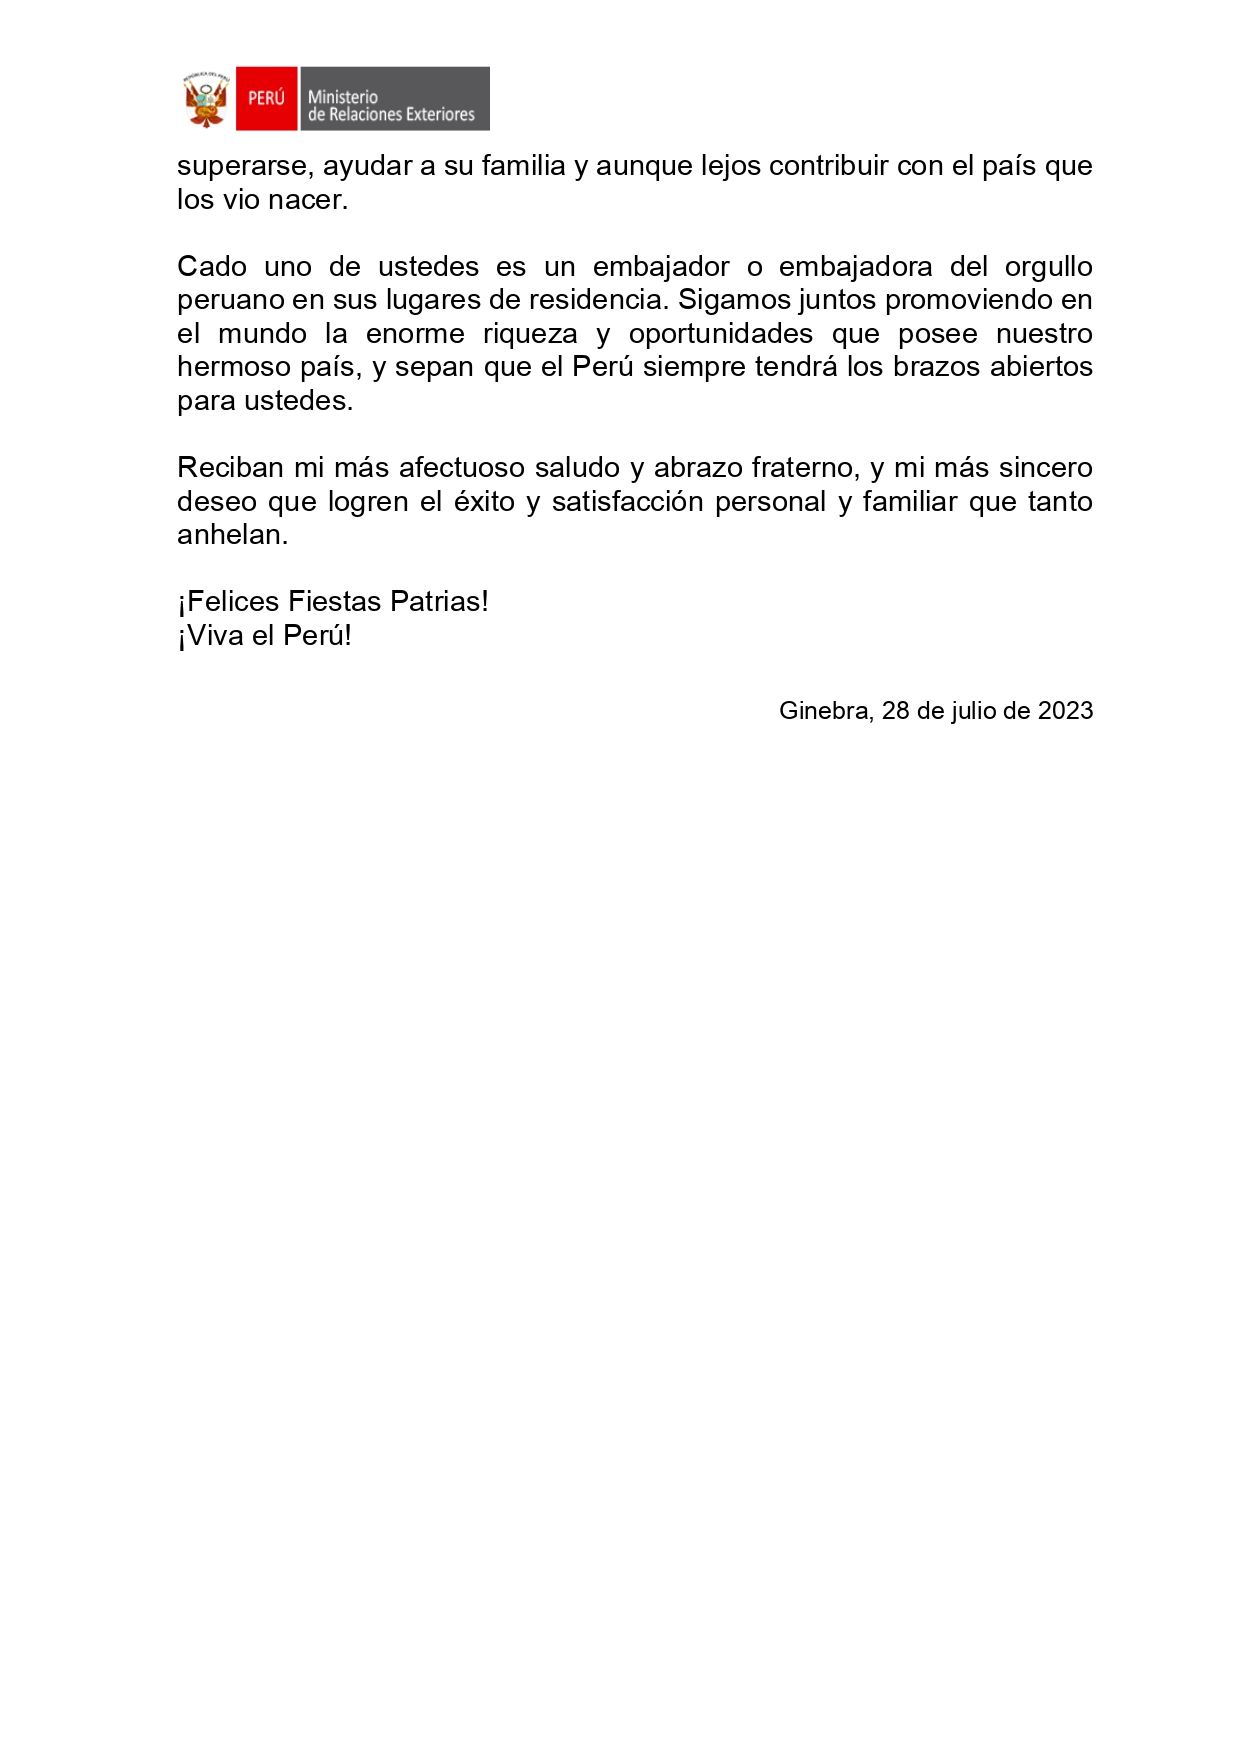 COMUNICADO Nro. 64- 2023 PALABRAS PRESIDENTA DE LA REPUBLICA POR FIESTAS PATRIAS__page-0002.jpg